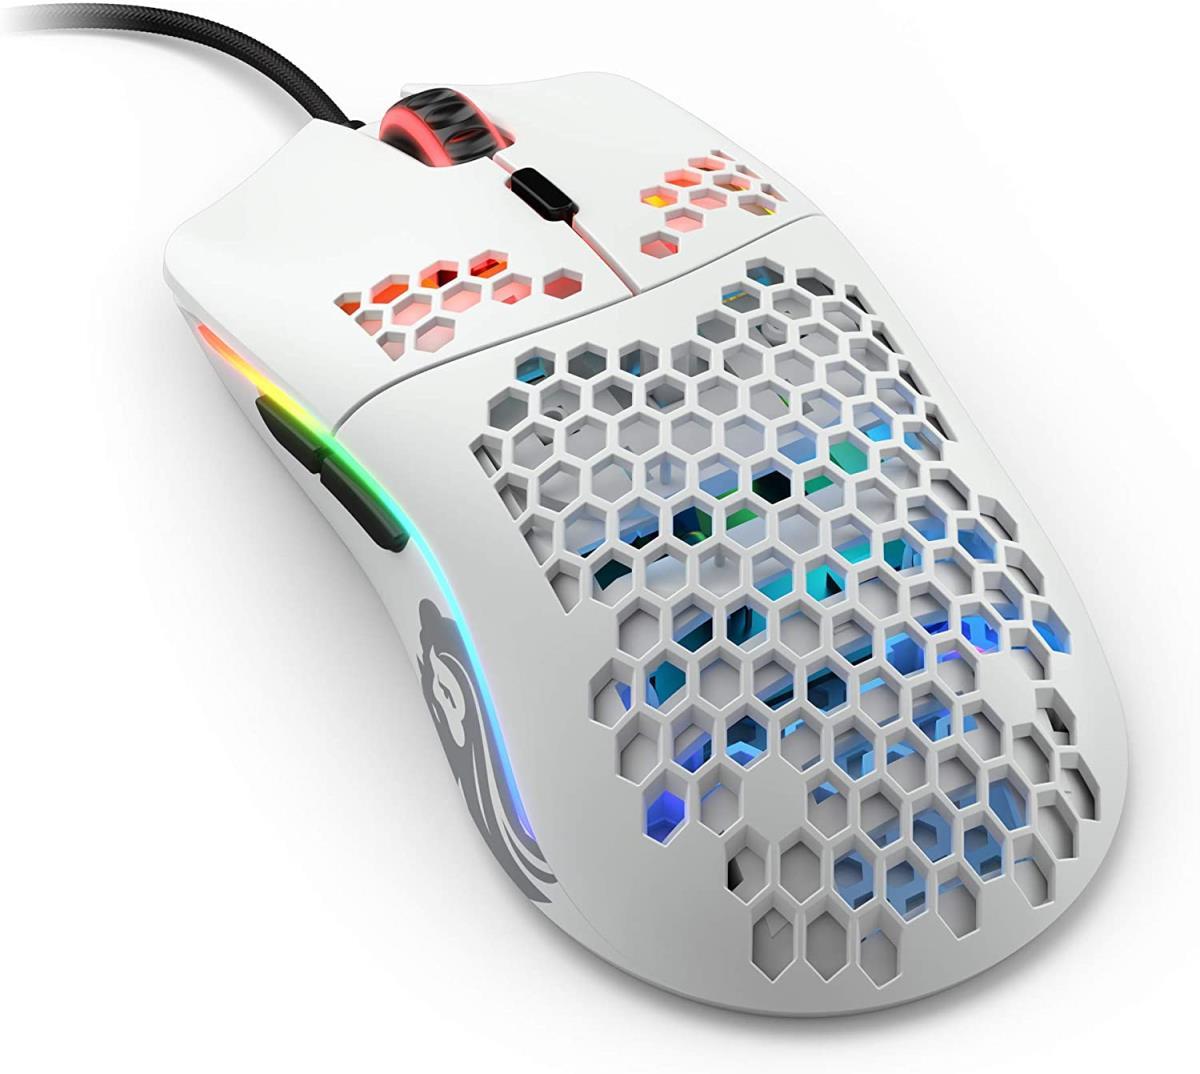  Glorious Model O Minus - легкая и бюджетная компьютерная мышь